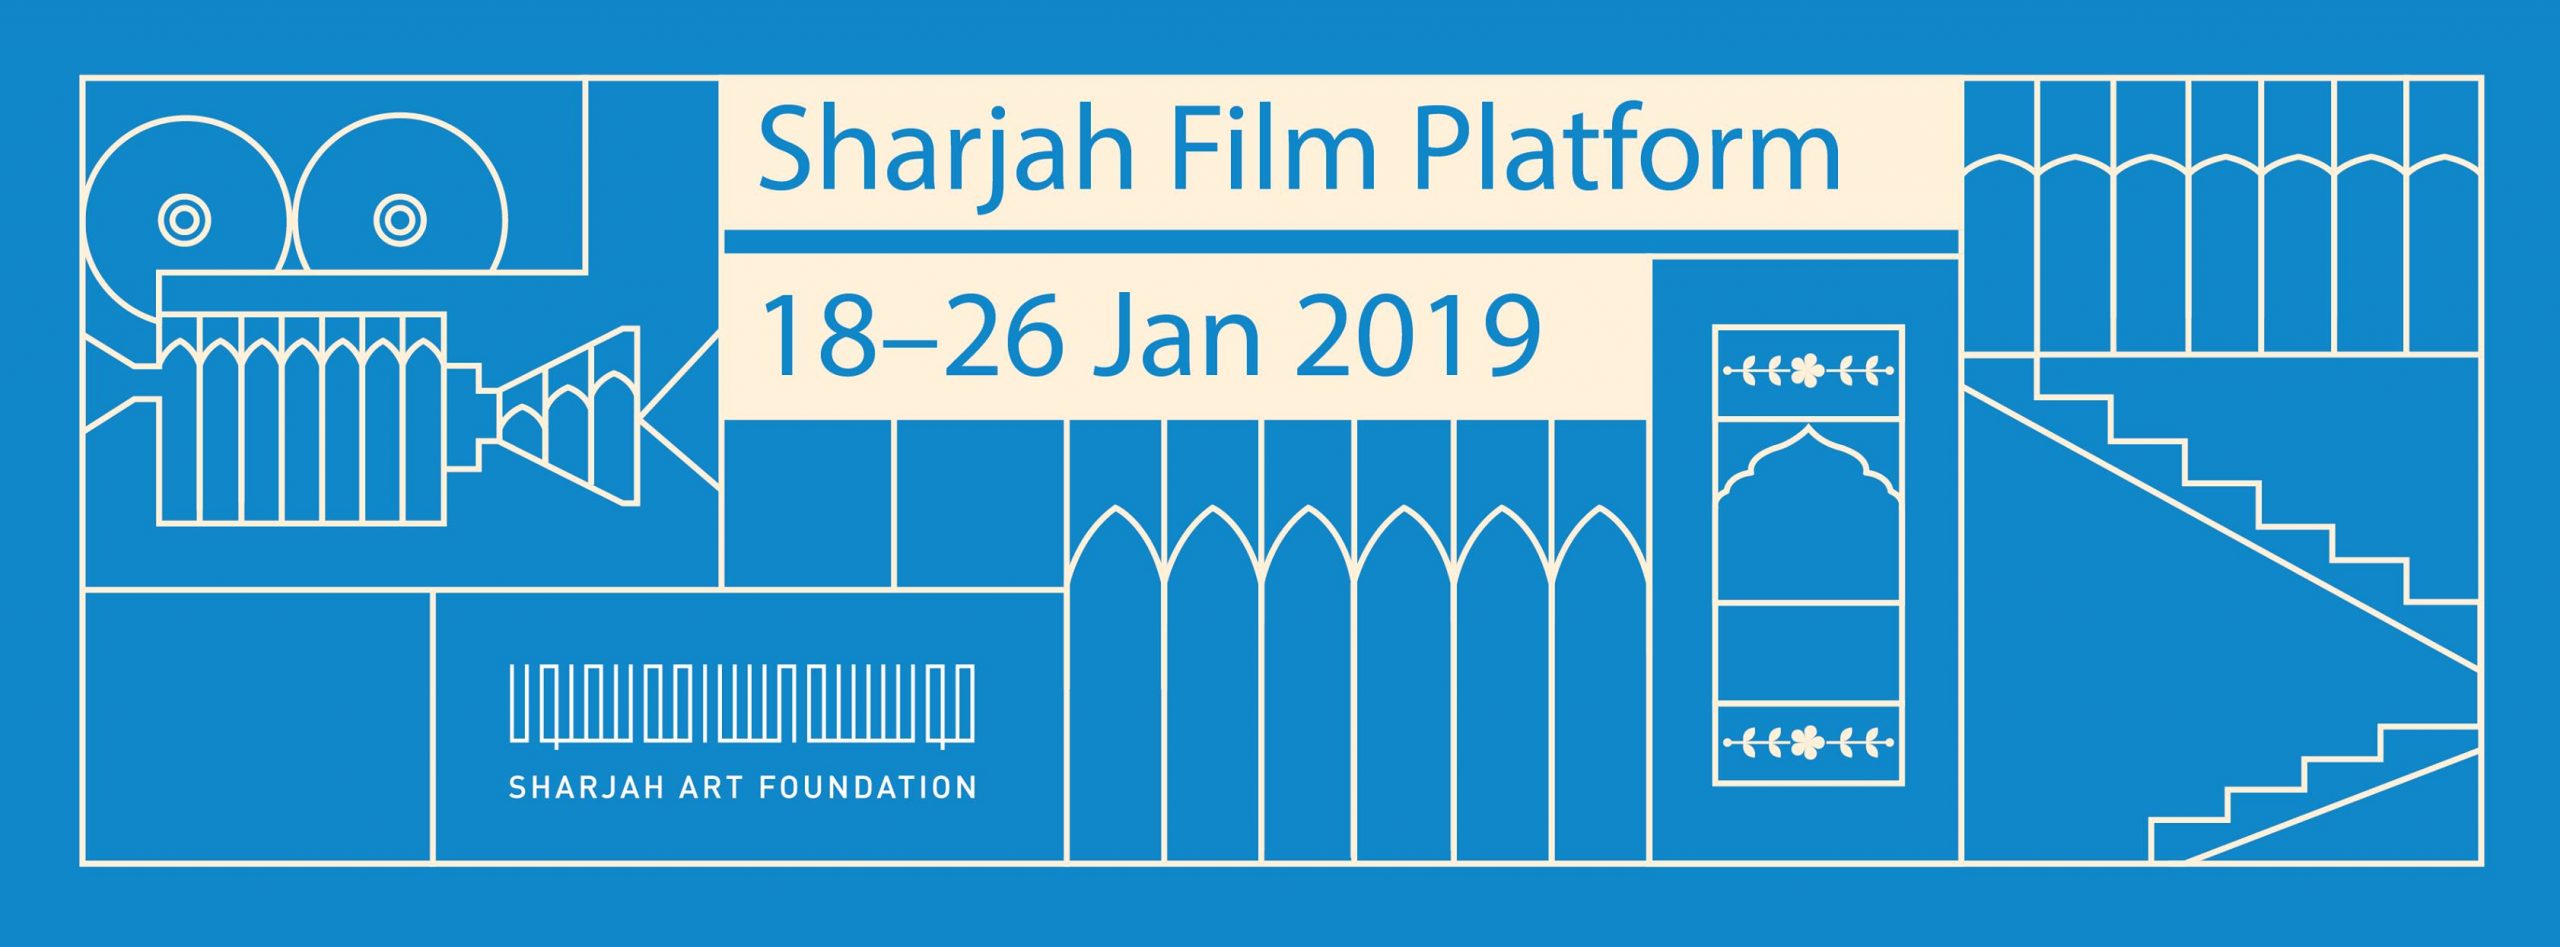 Sharjah Film Platform 2019 - Coming Soon in UAE